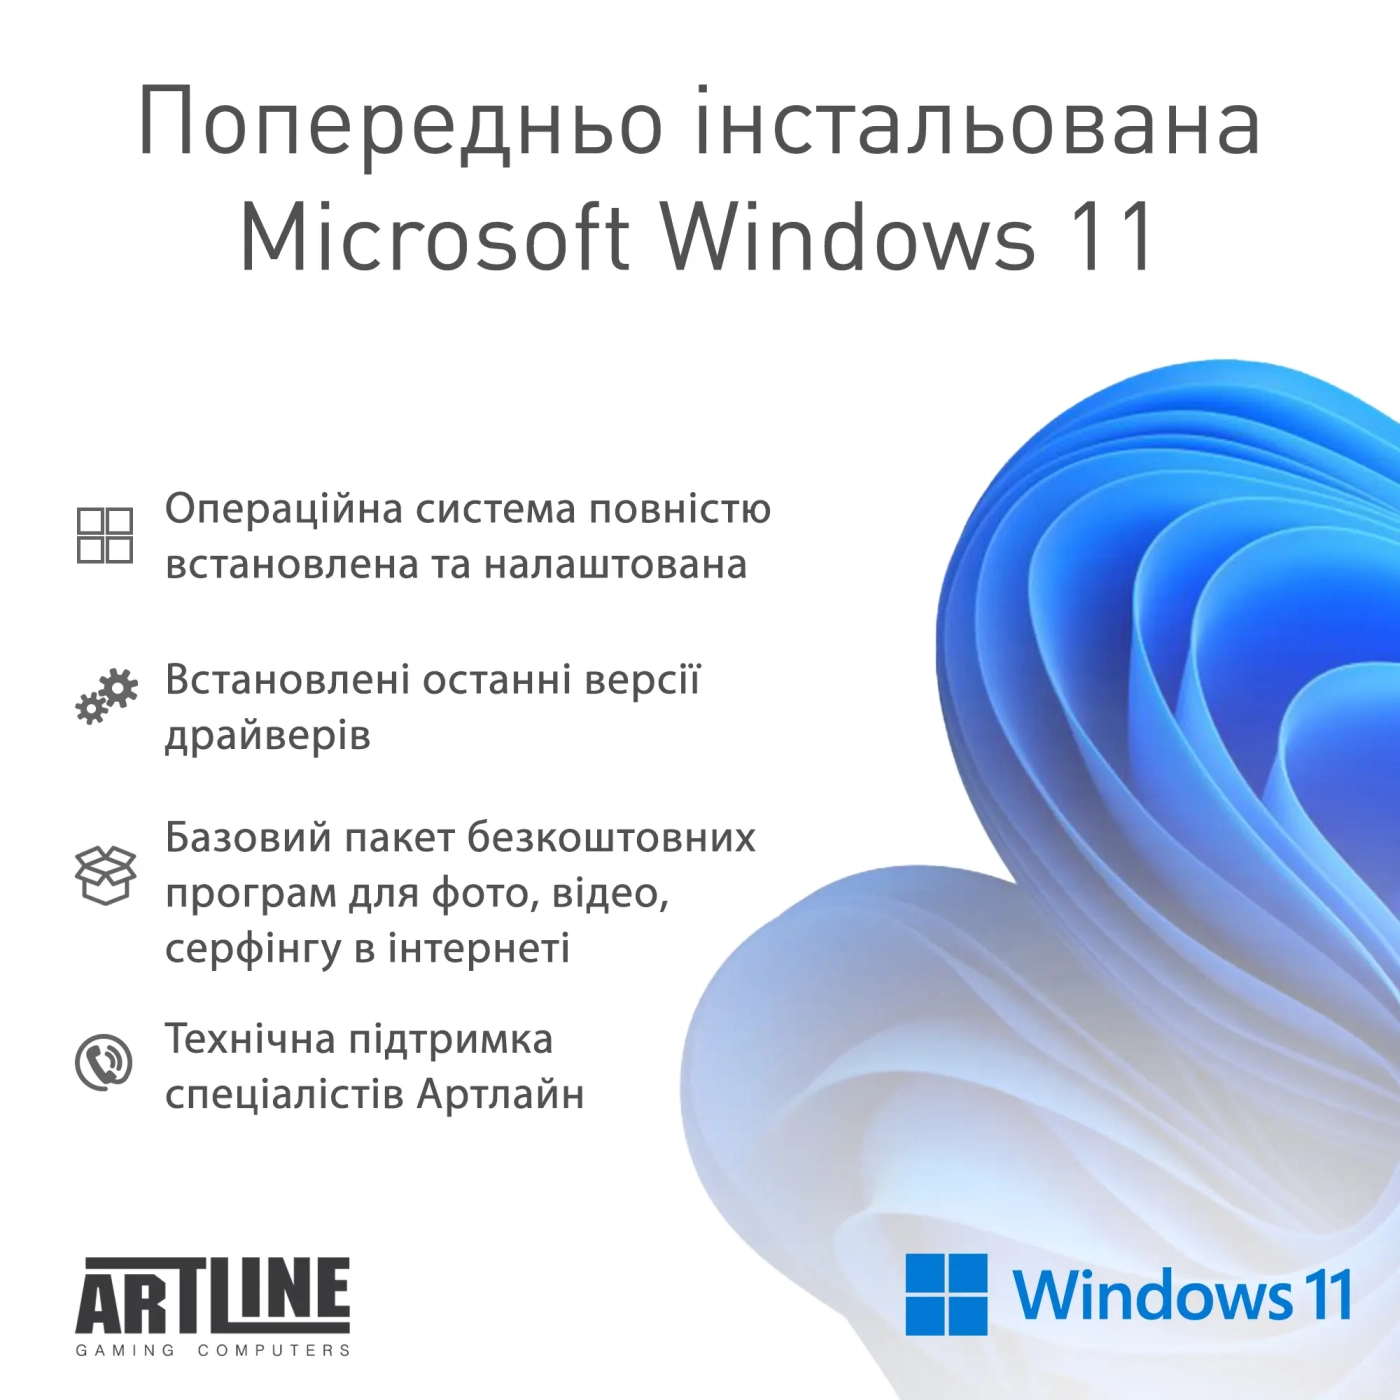 Купить Рабочая станция ARTLINE WorkStation W78 Windows 11 Pro (W78v29Win) - фото 8